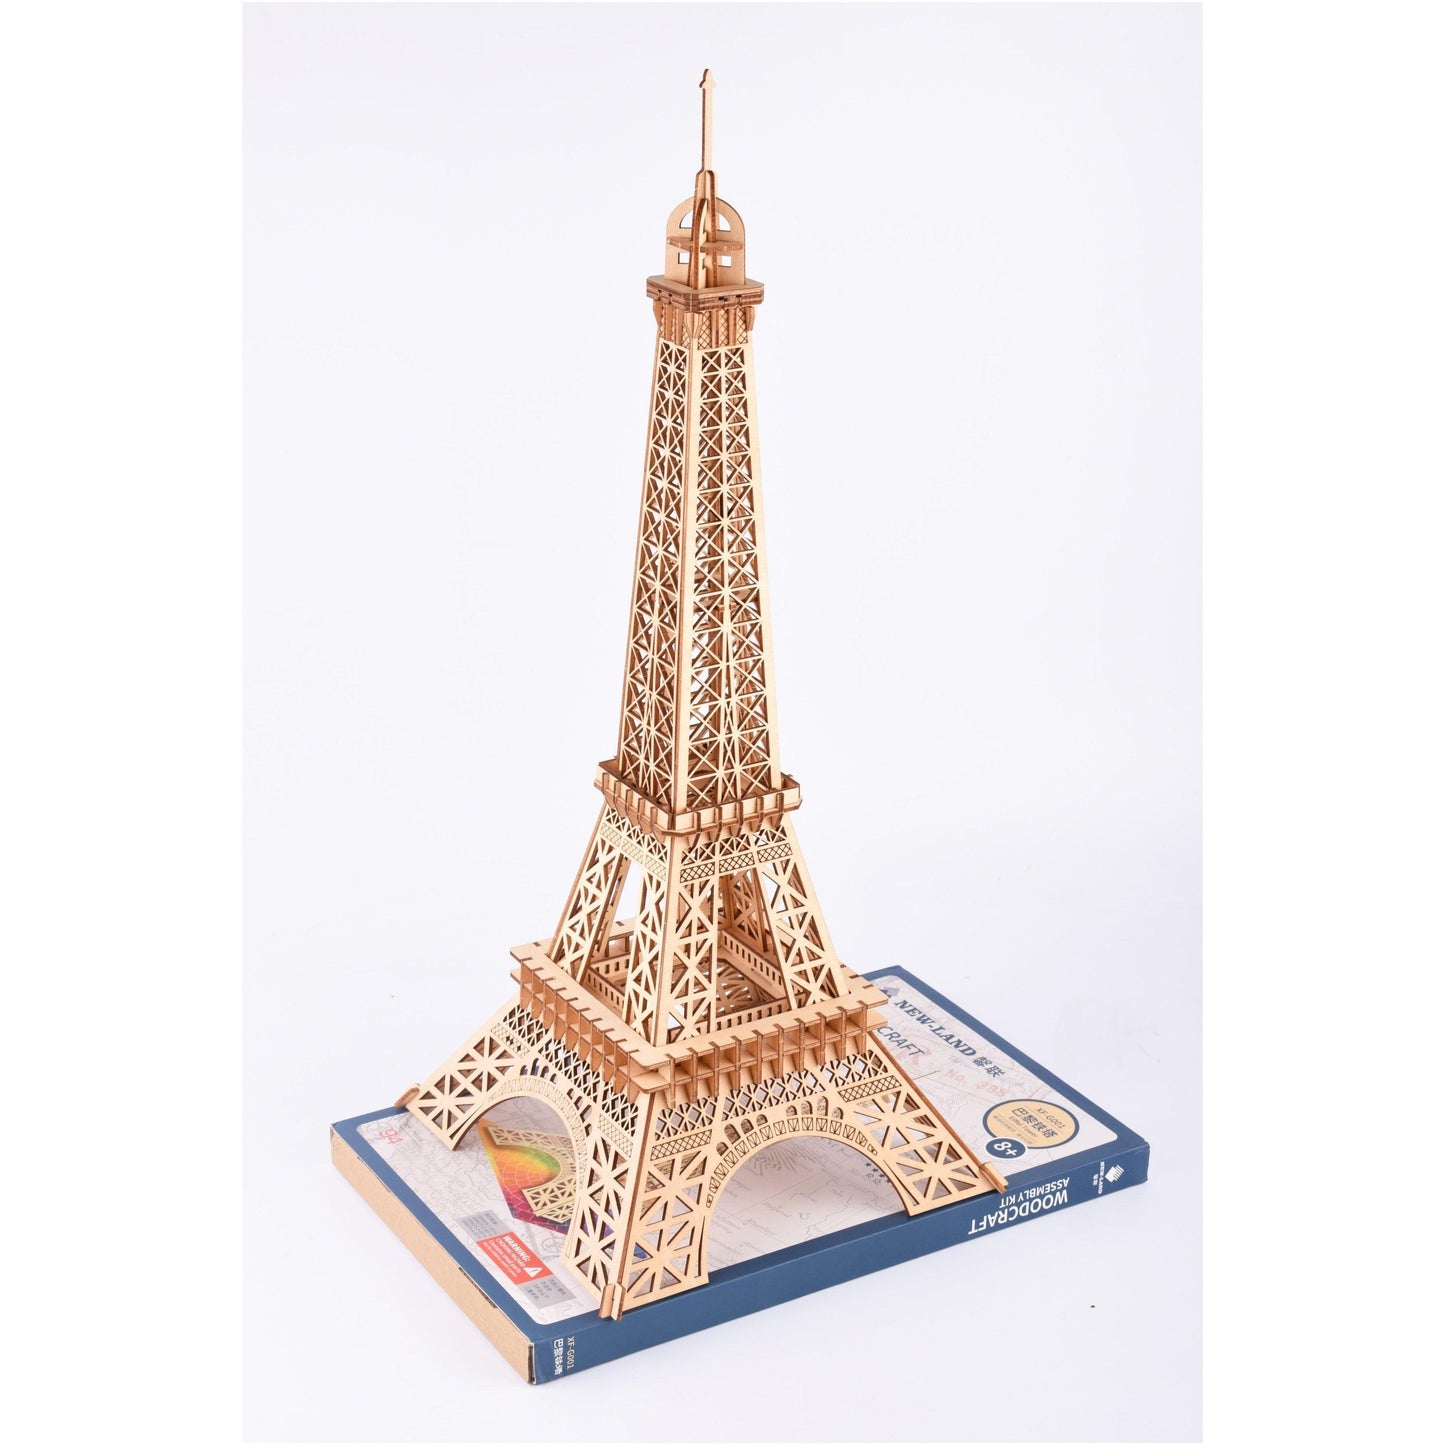 Eiffel Tower Paris DIY Wooden Puzzle Kit - 3D Mechanical Wooden Puzzle Kit - DIY Wooden Puzzle - Wooden Miniature Dollhouse - Eiffel Tower